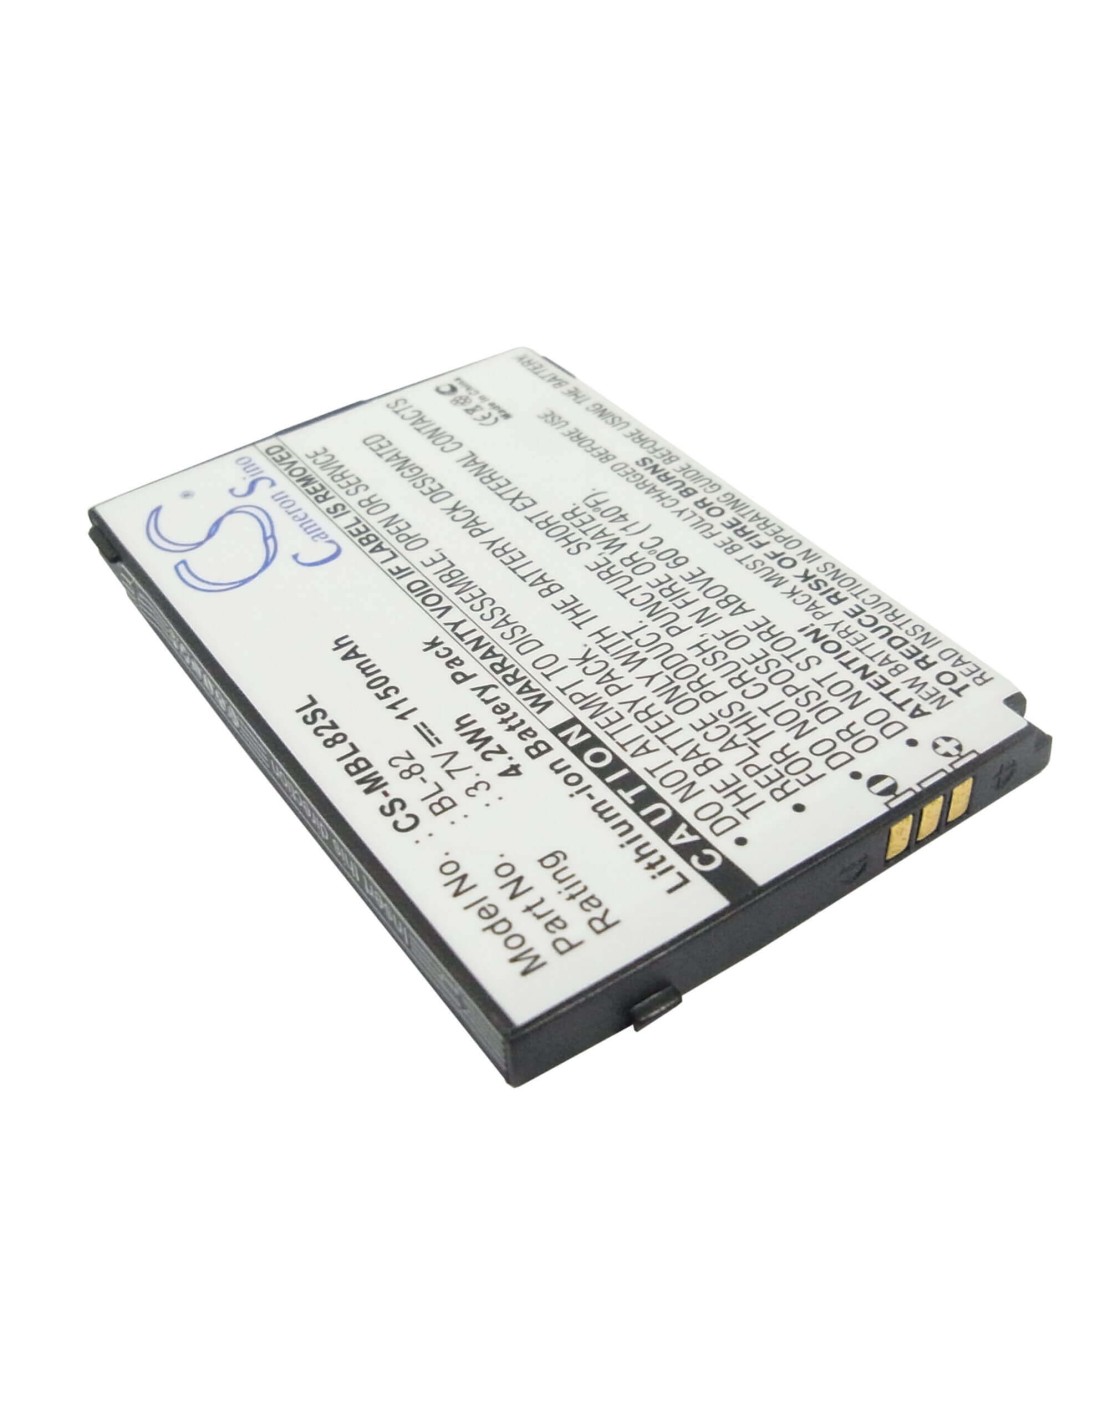 Battery for I-Mobile 2206 3.7V, 1150mAh - 4.26Wh